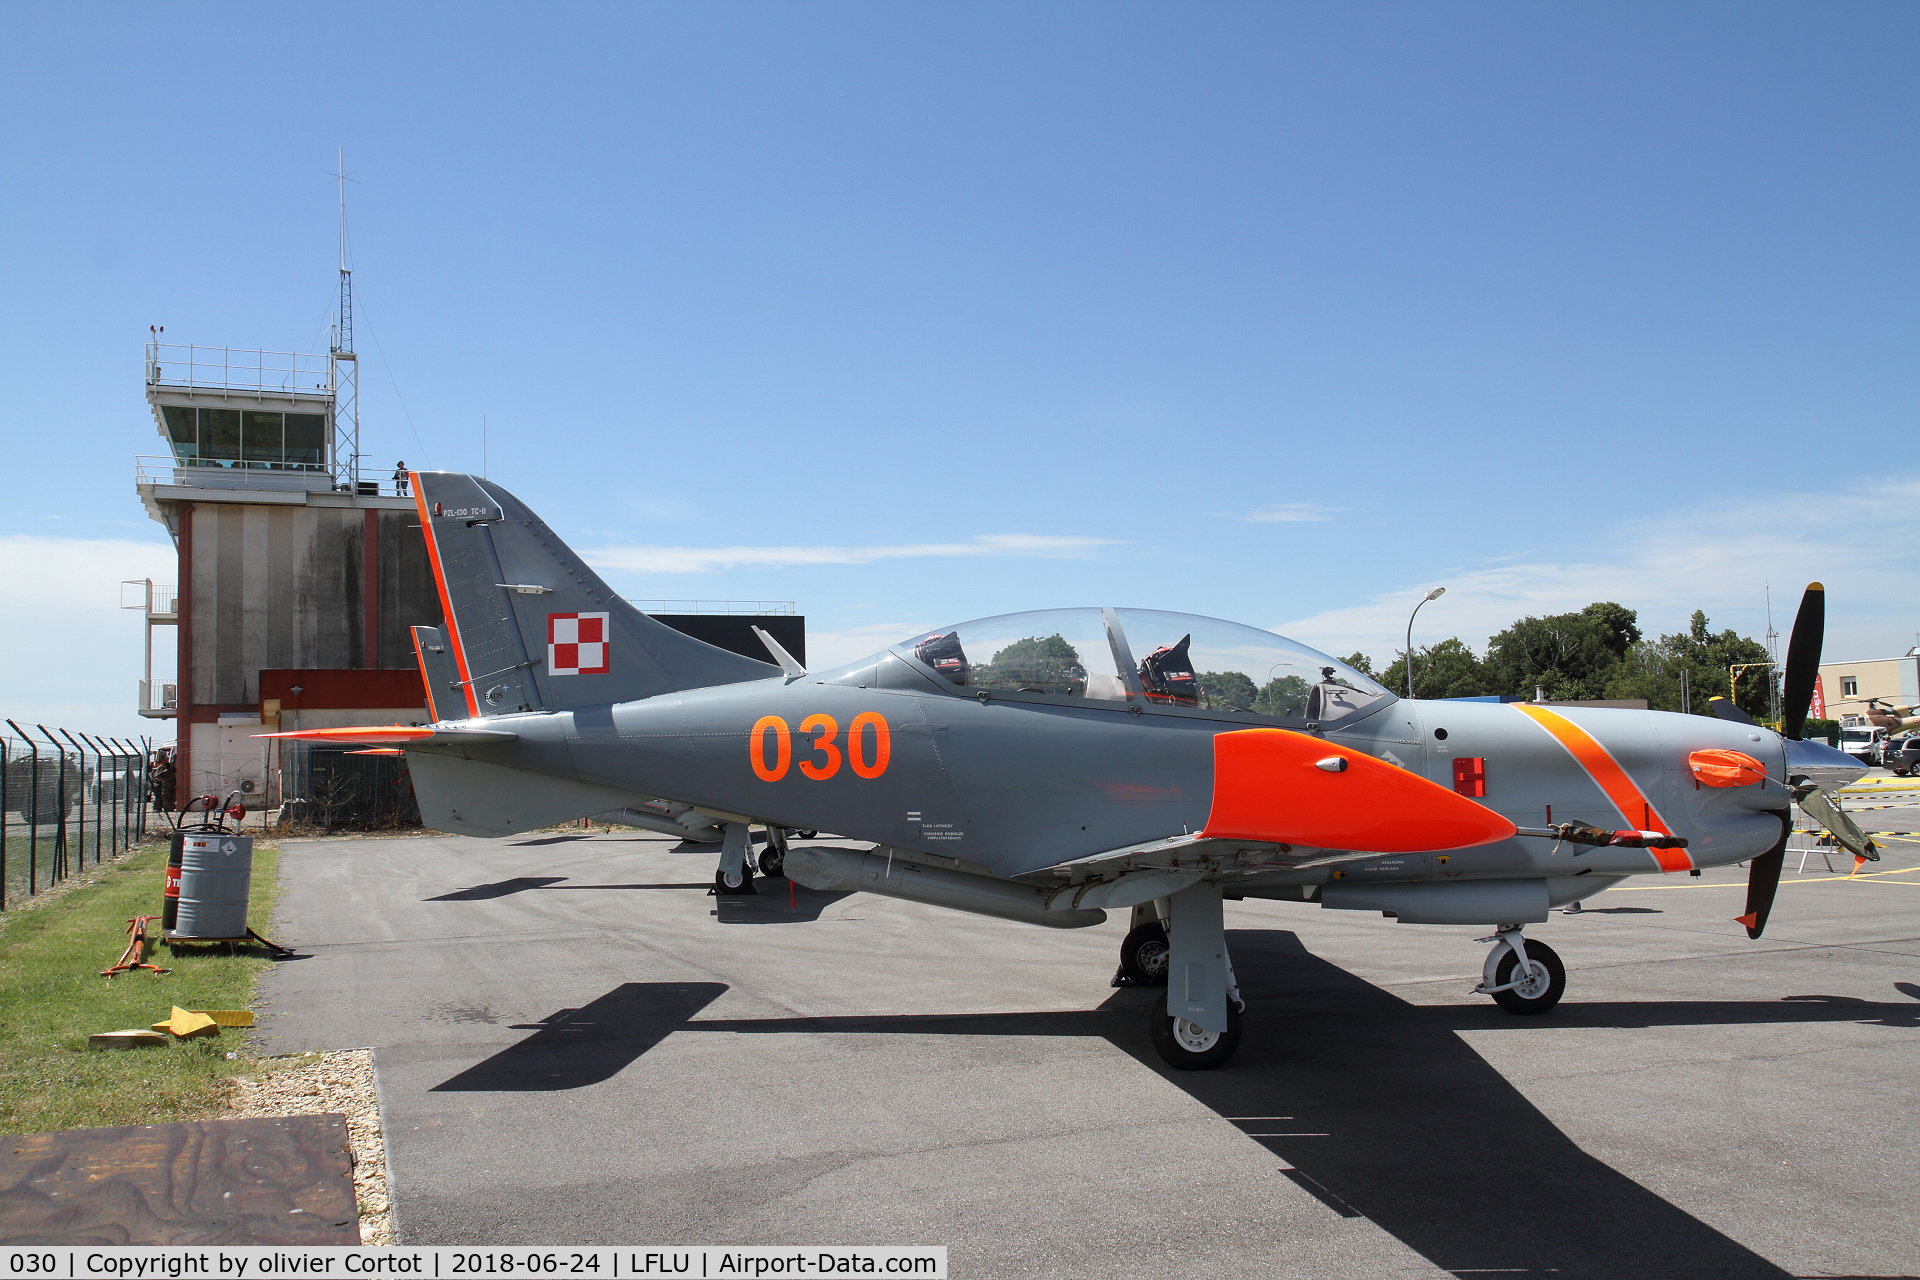 030, PZL-Okecie PZL-130TC-II Turbo Orlik C/N 03940030, 2018 Valence airshow